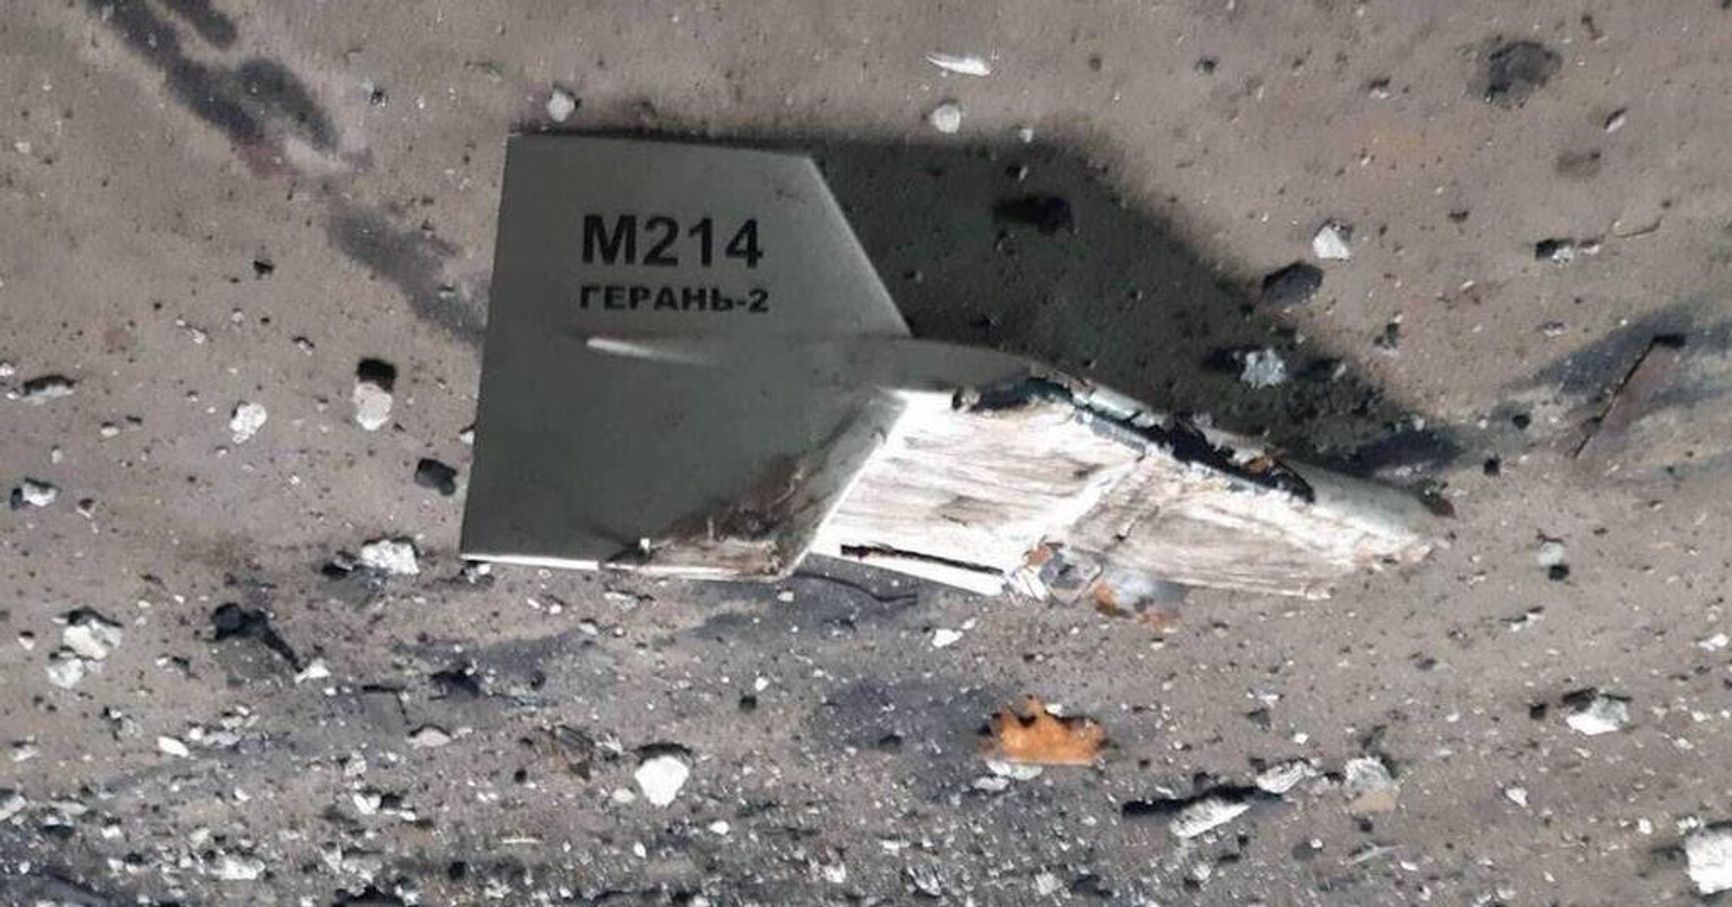 Сбитый в Украине дрон «Герань-2»